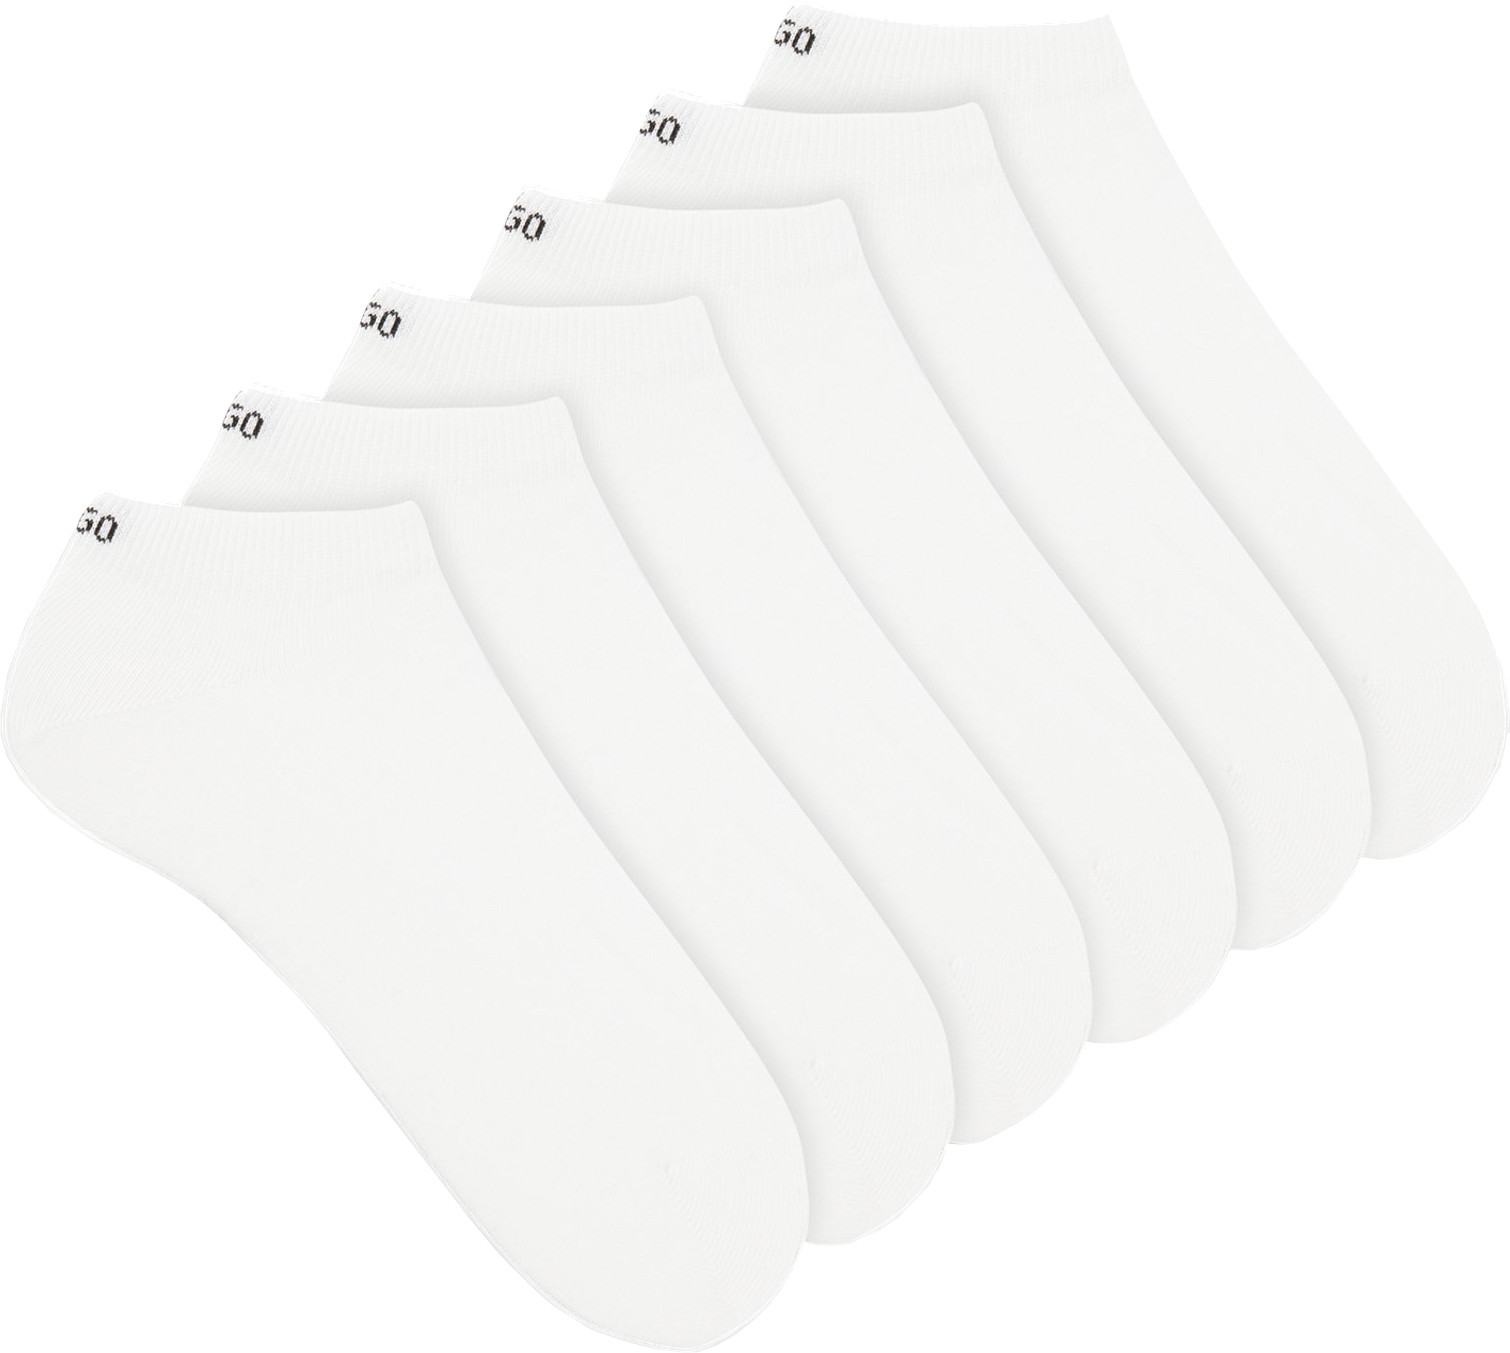 Hugo Boss 6 PACK - pánské ponožky HUGO 50480223-100 39-42